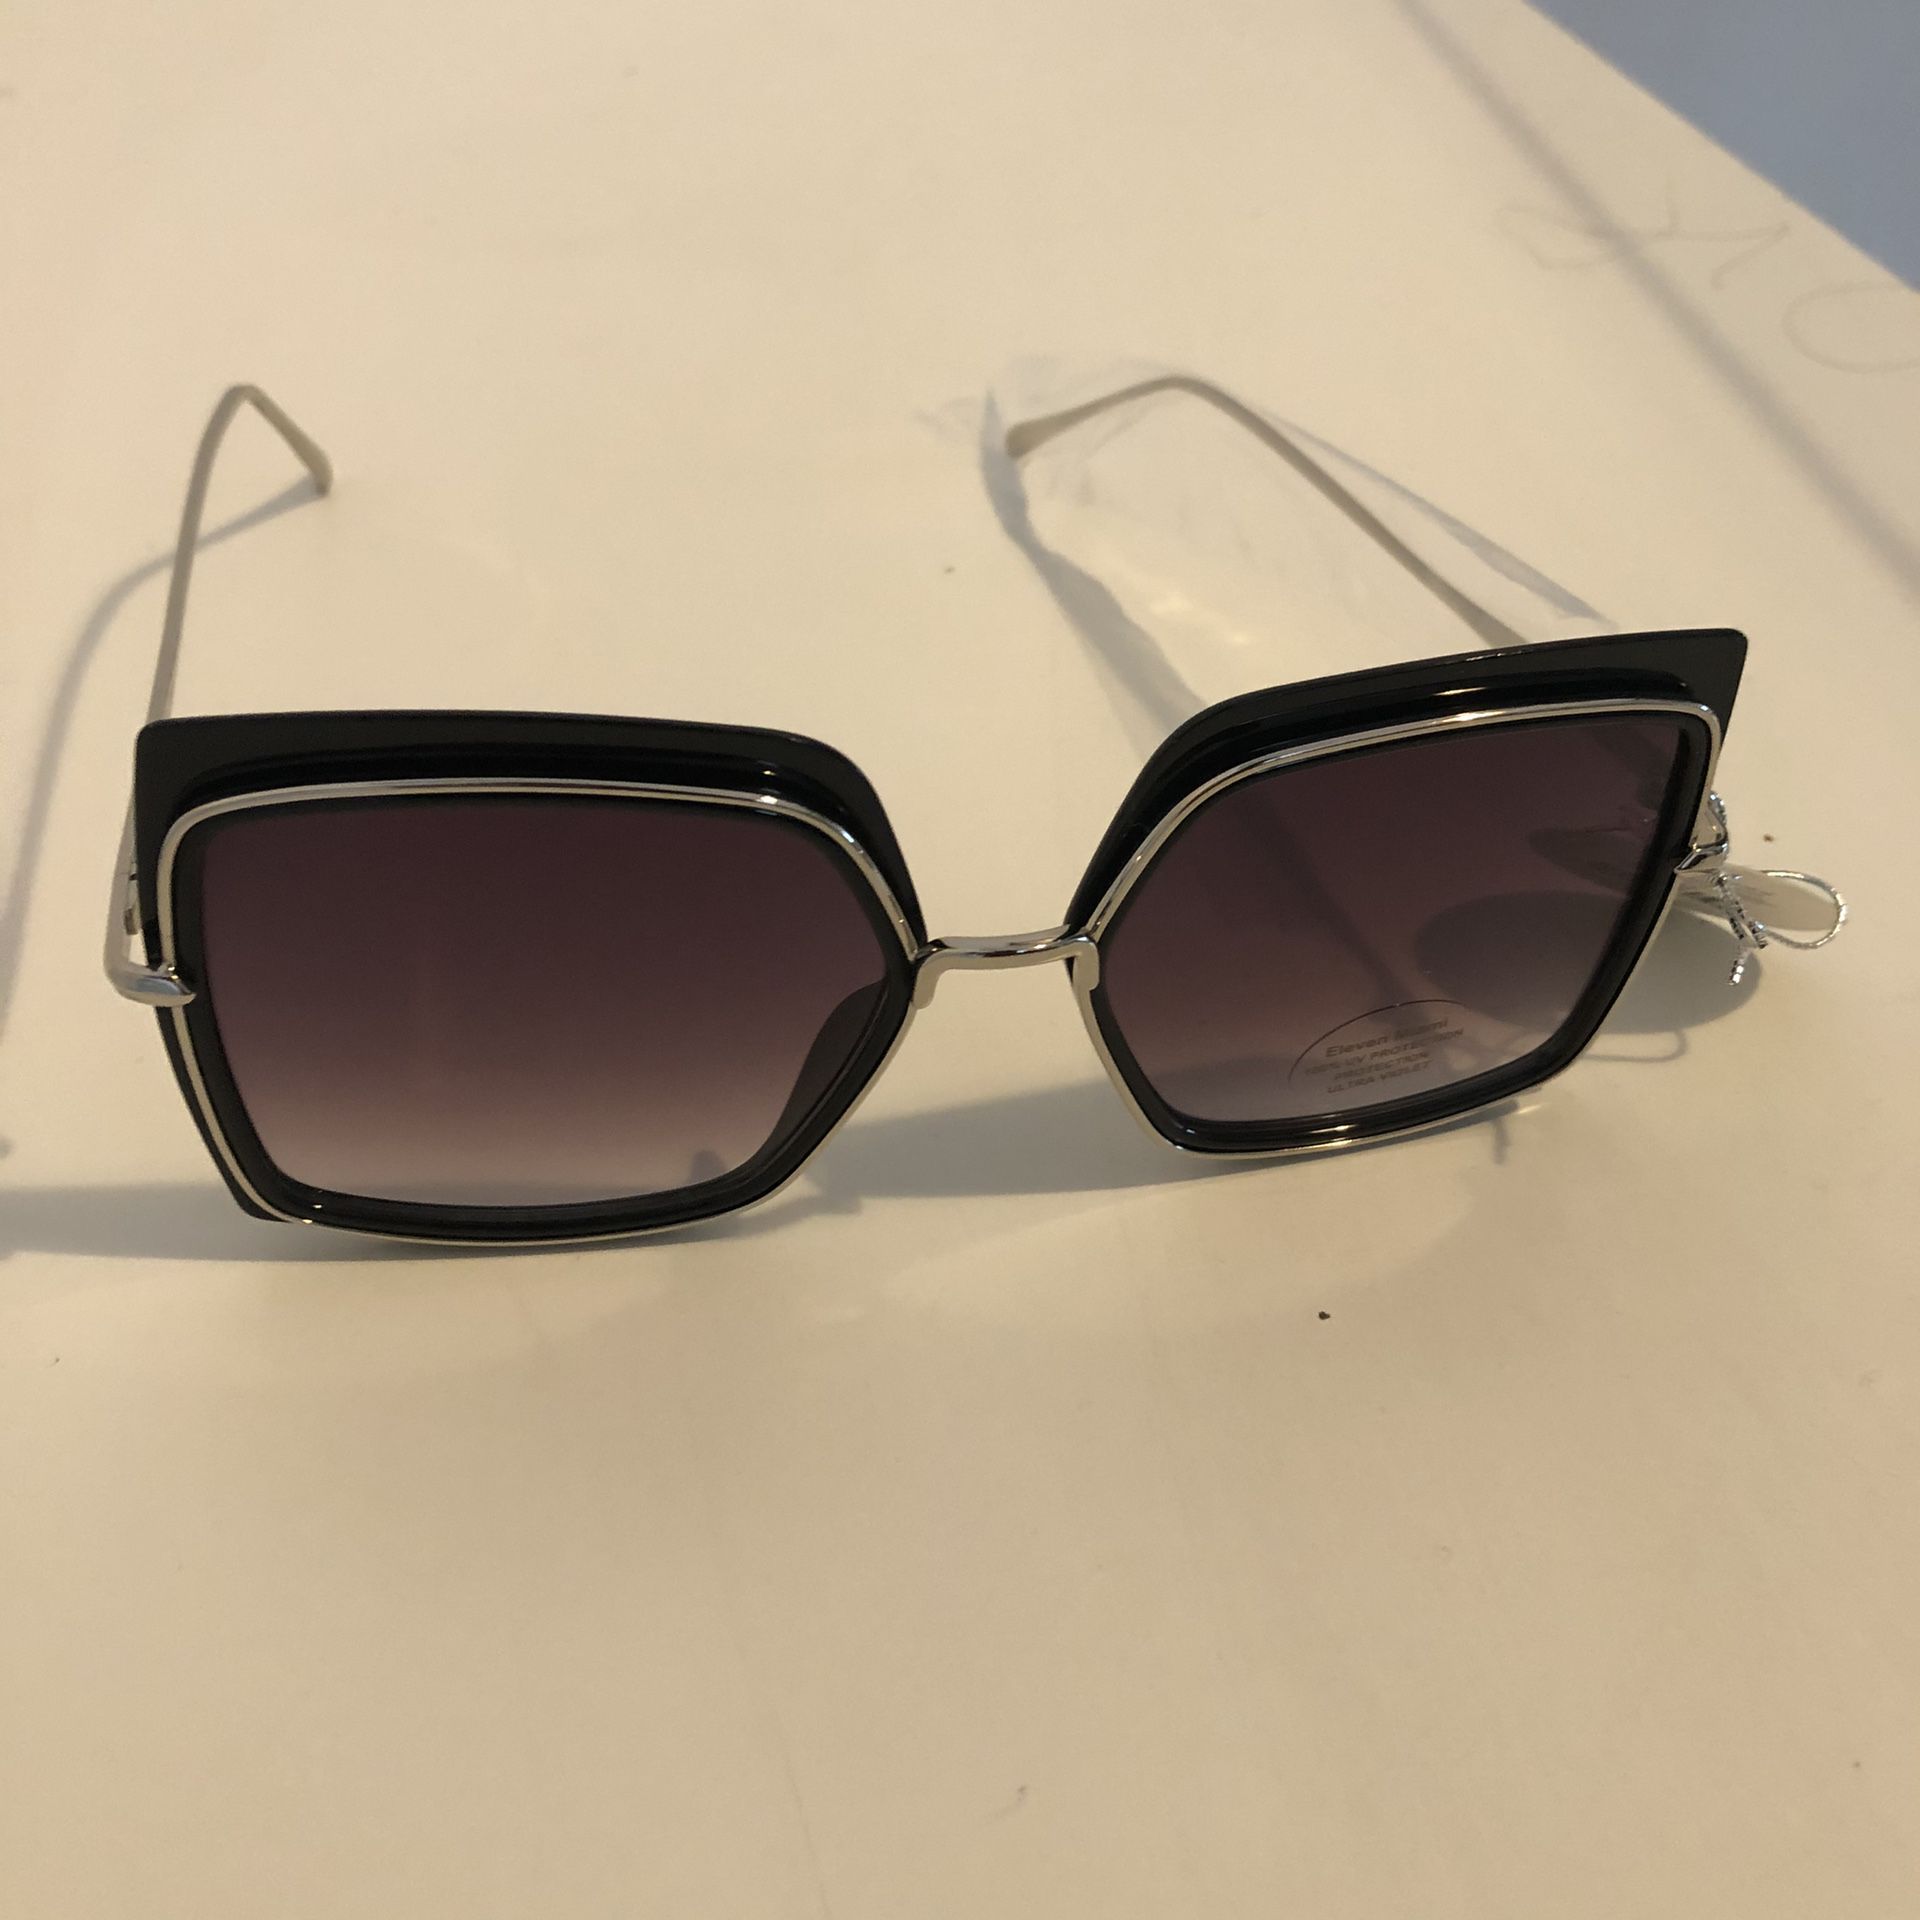 Designer LIVE Miami Sun Glasses for Sale in Miami Beach, FL - OfferUp